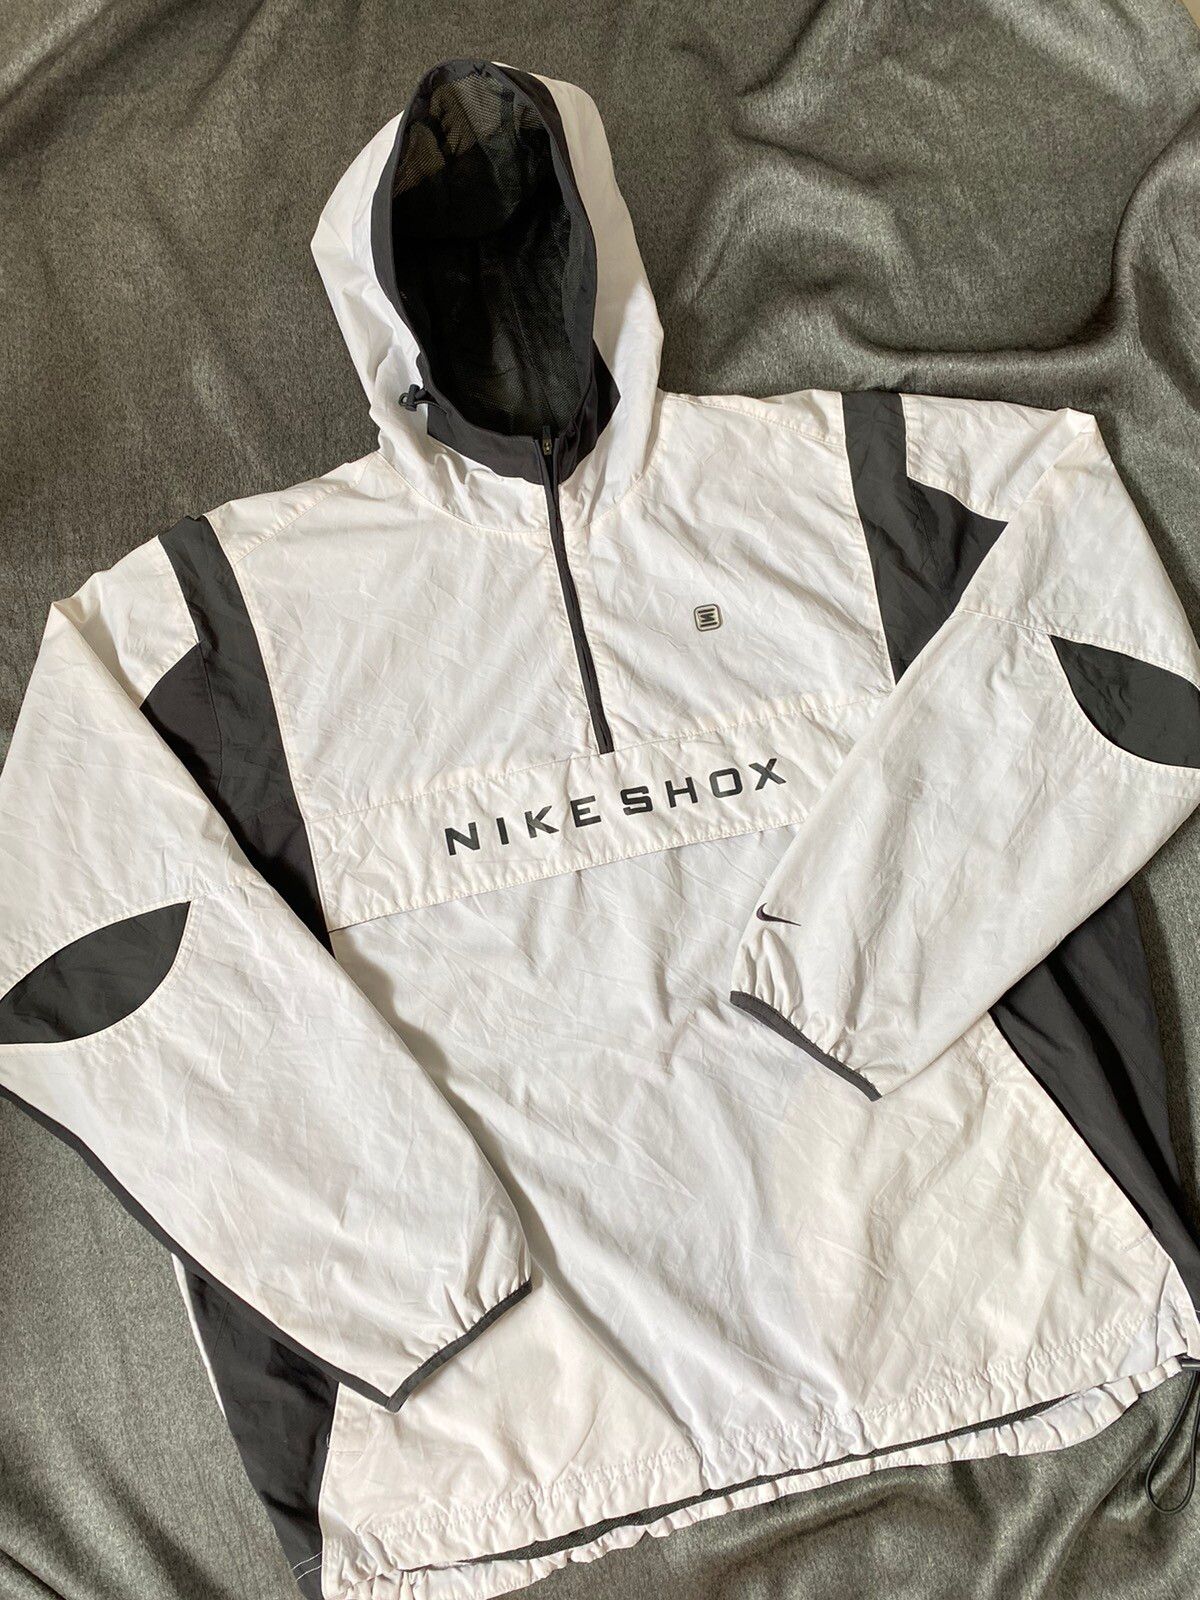 Nike Vintage Nike Shox Anorak Jacket Size US XL / EU 56 / 4 - 1 Preview